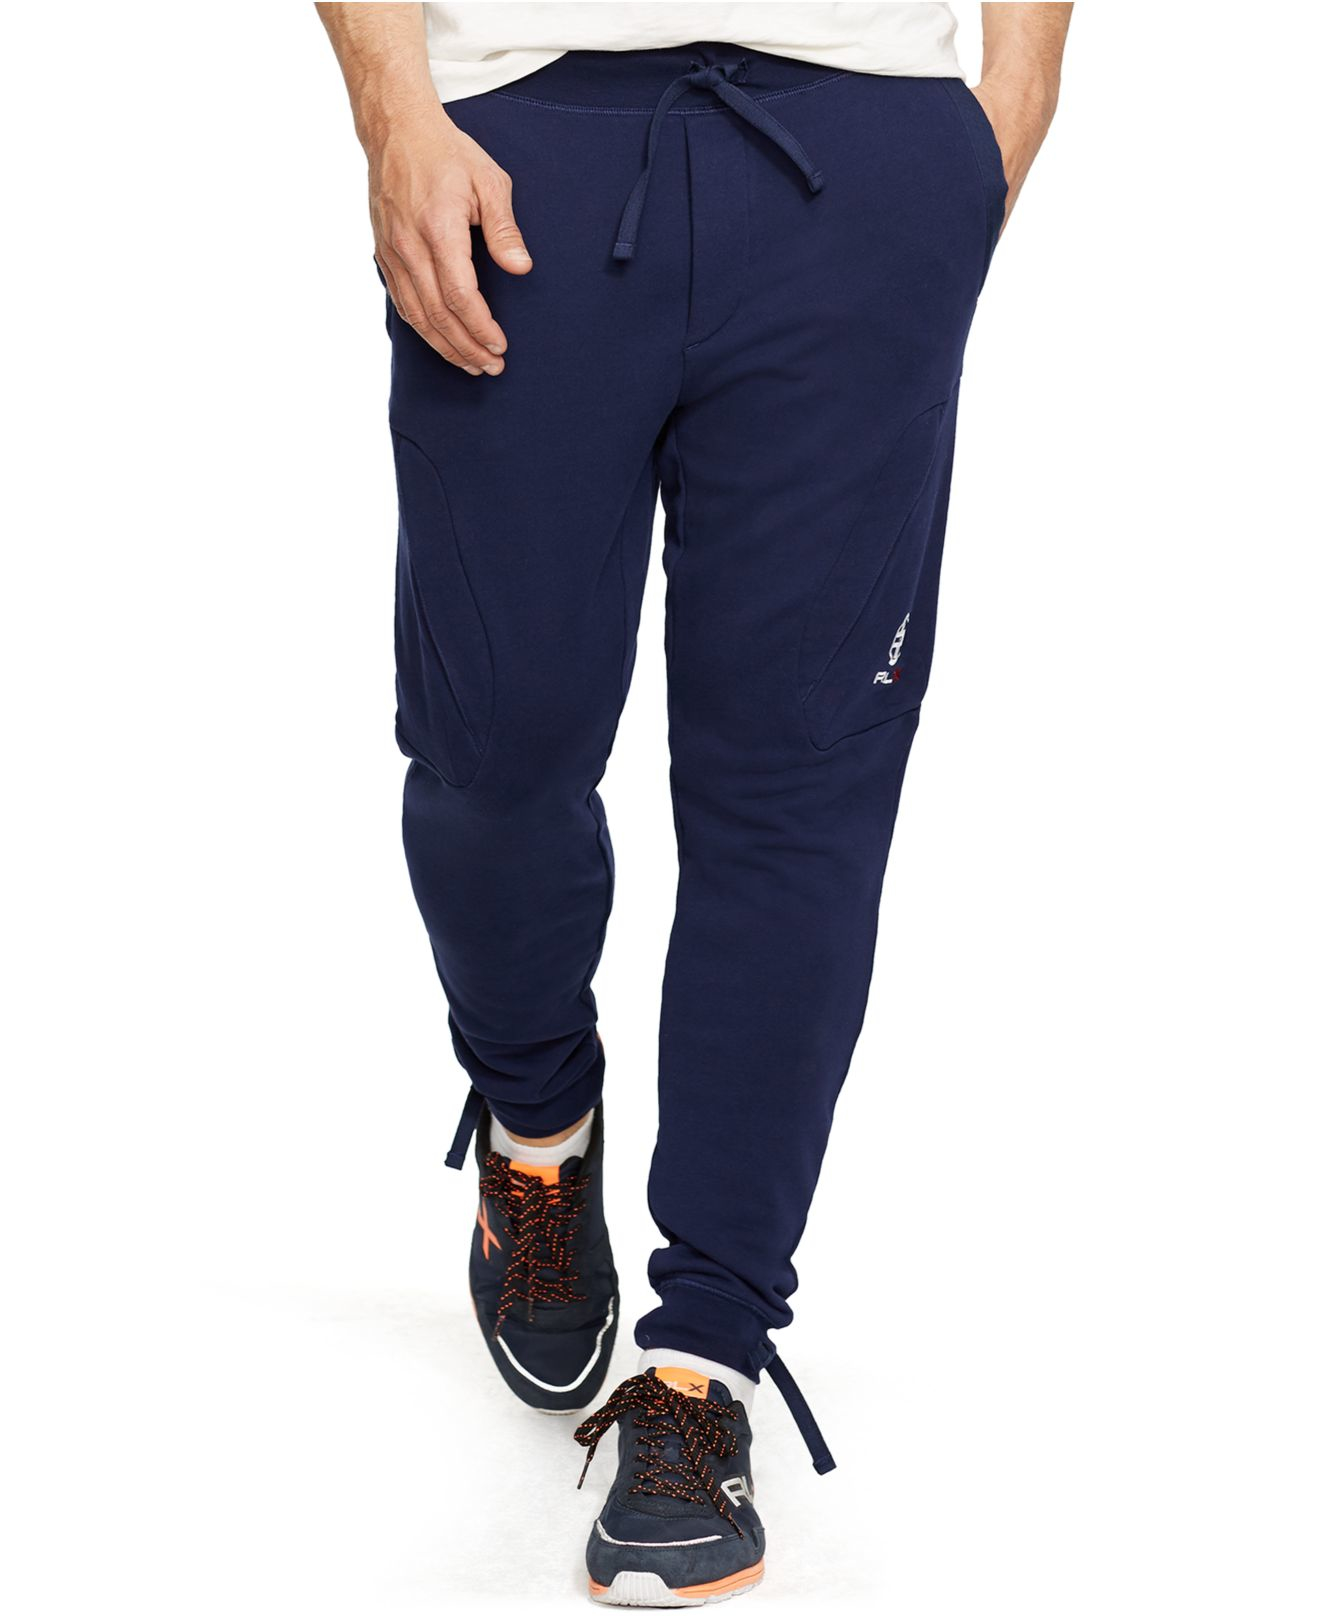 Lyst - Polo Ralph Lauren Wimbledon Cotton Jogging Pants in Blue for Men